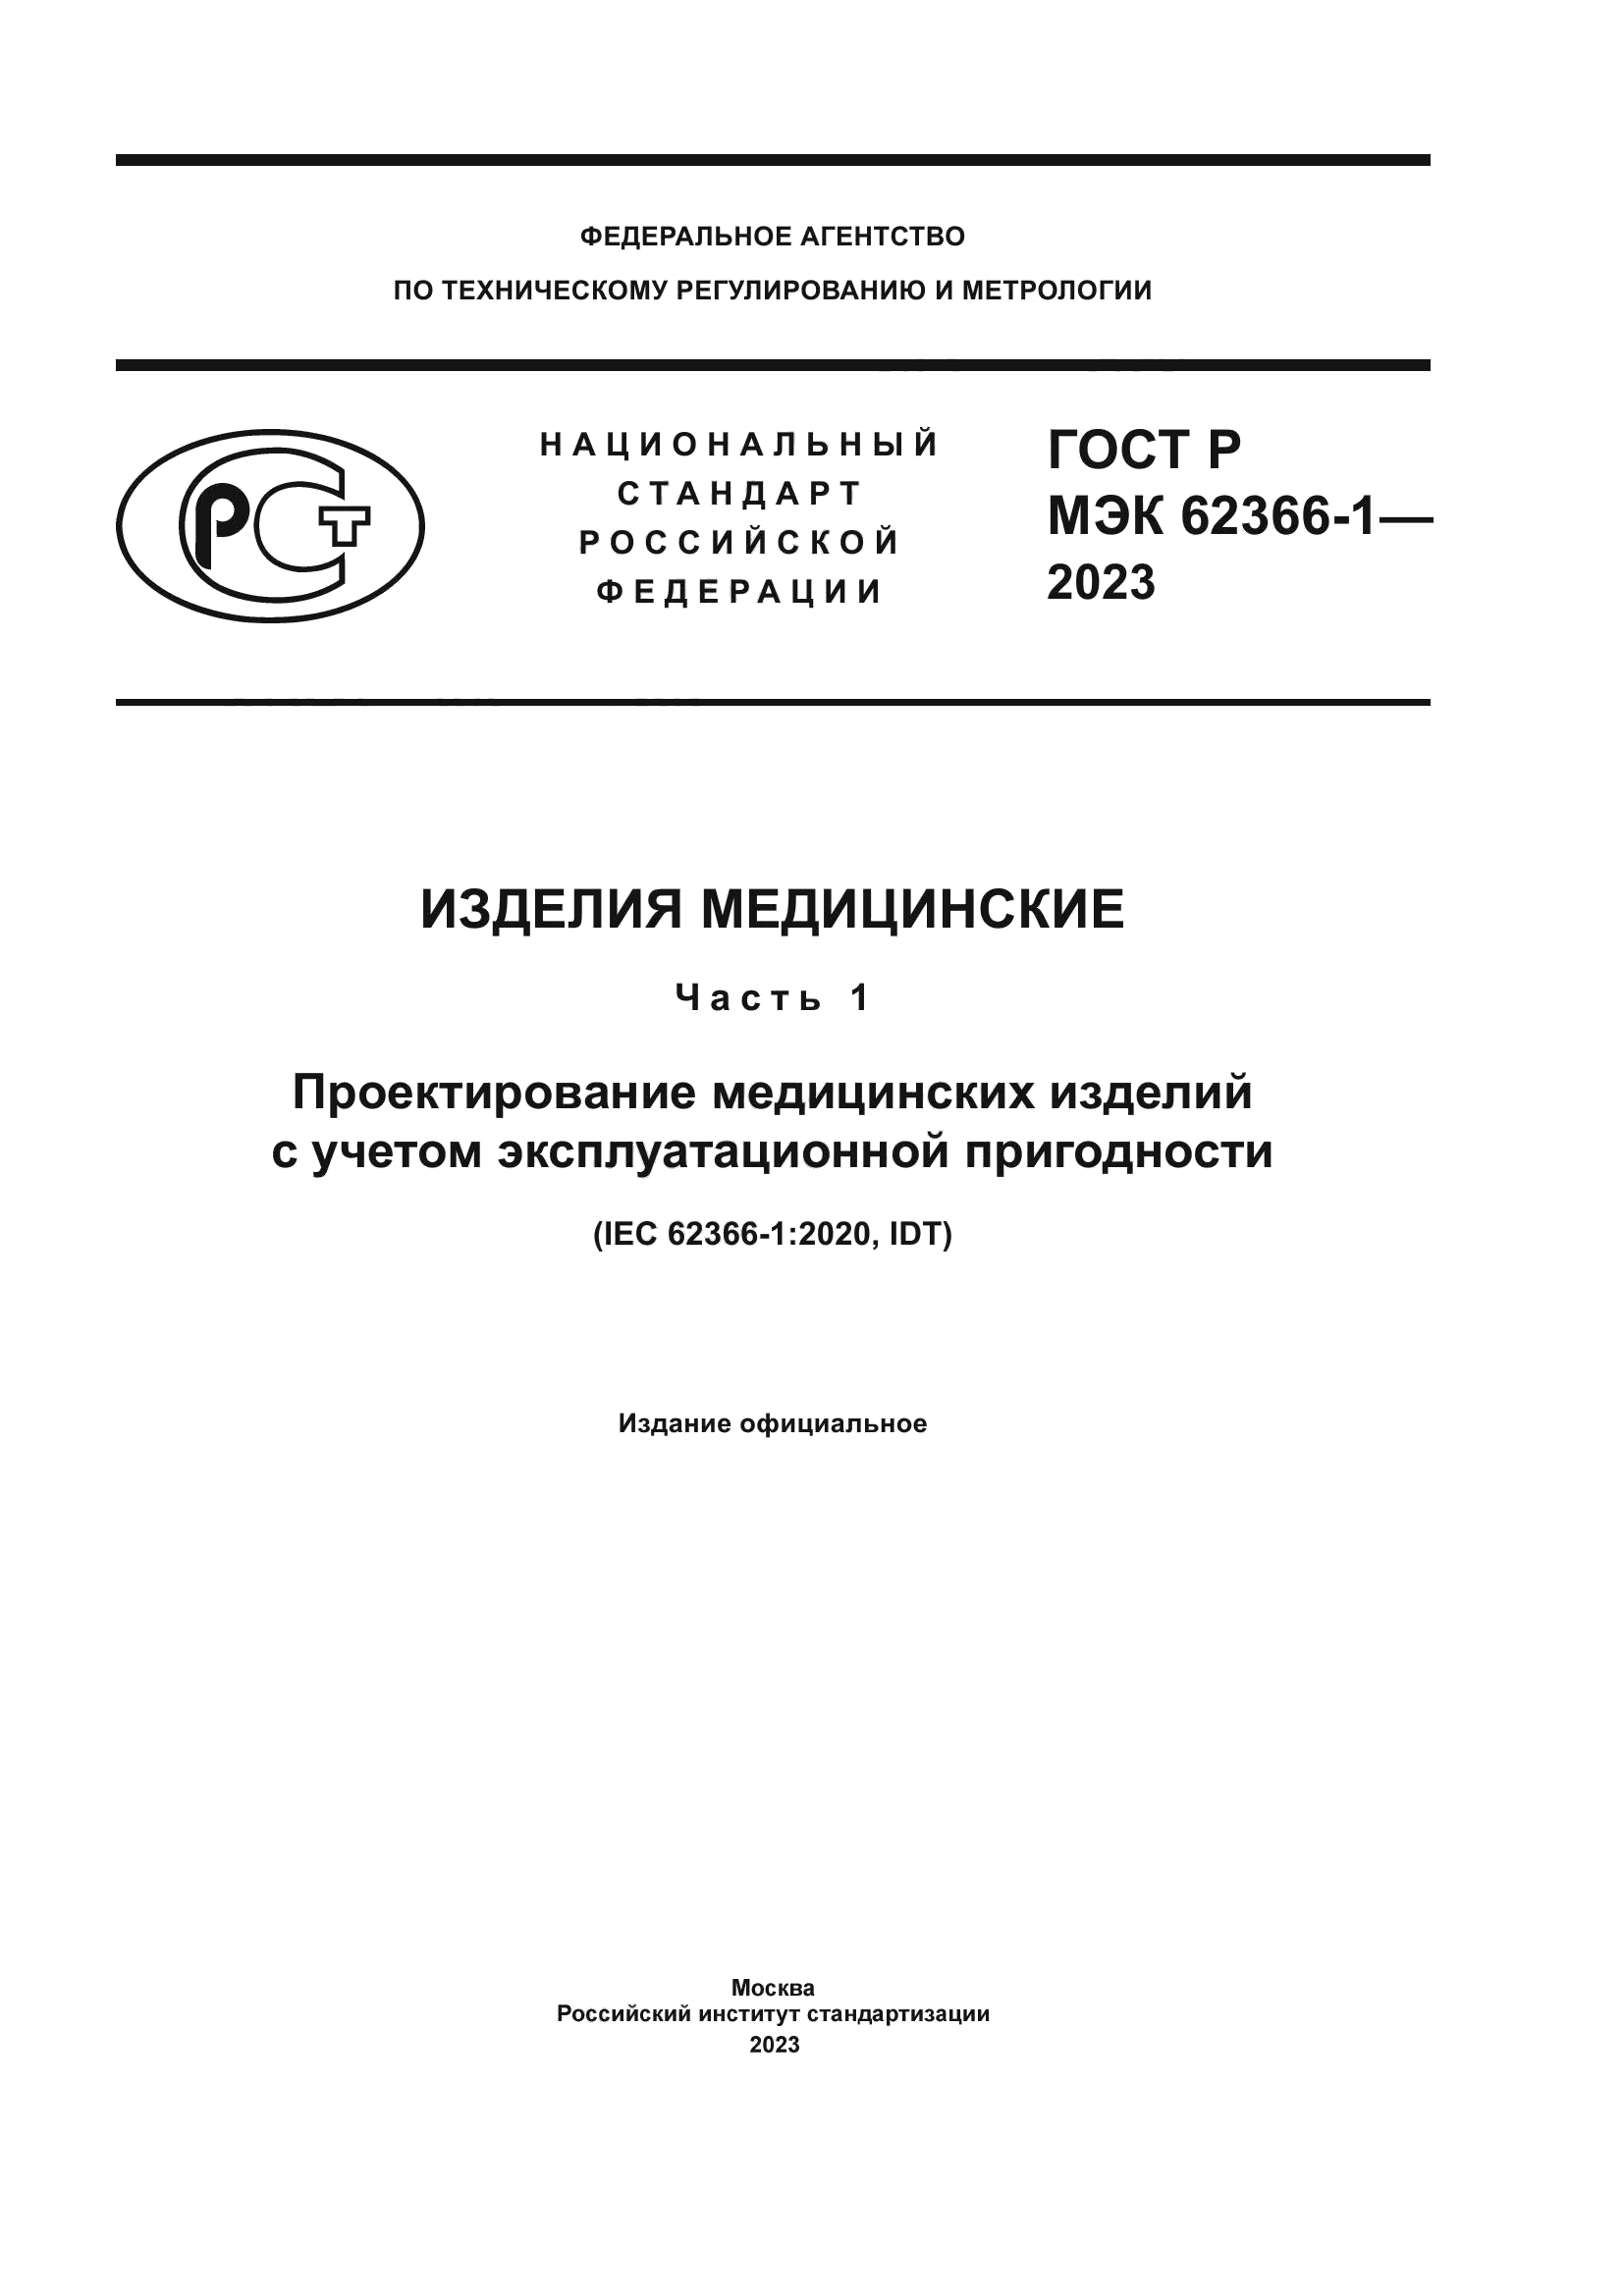 ГОСТ Р МЭК 62366-1-2023